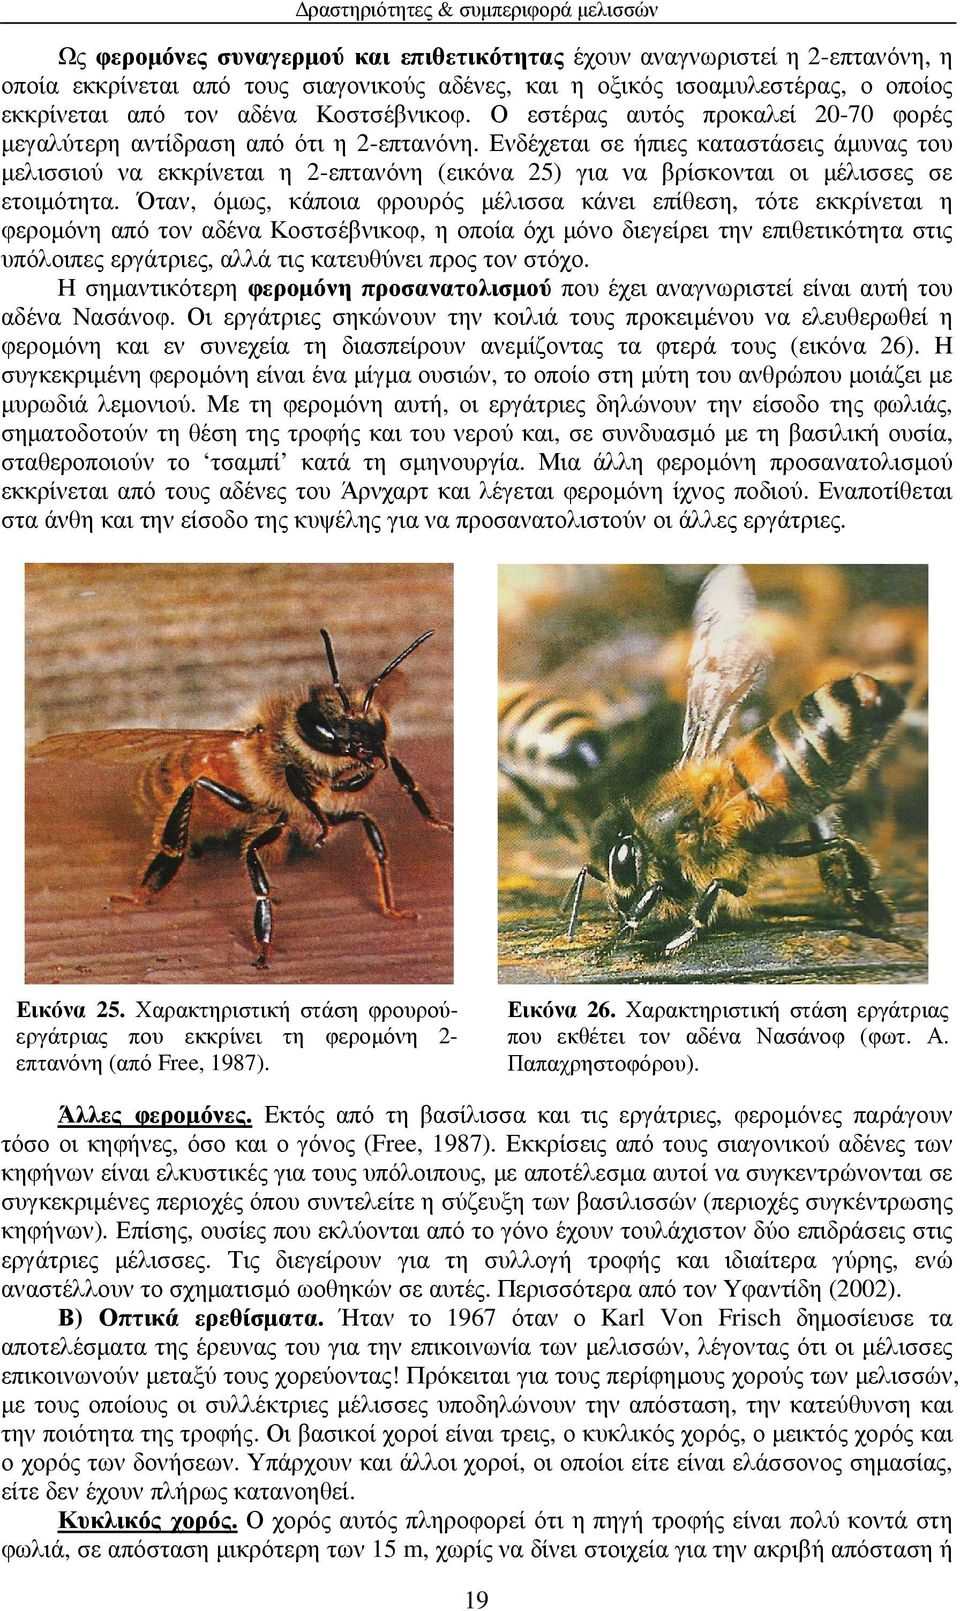 Ενδέχεται σε ήπιες καταστάσεις άµυνας του µελισσιού να εκκρίνεται η 2-επτανόνη (εικόνα 25) για να βρίσκονται οι µέλισσες σε ετοιµότητα.